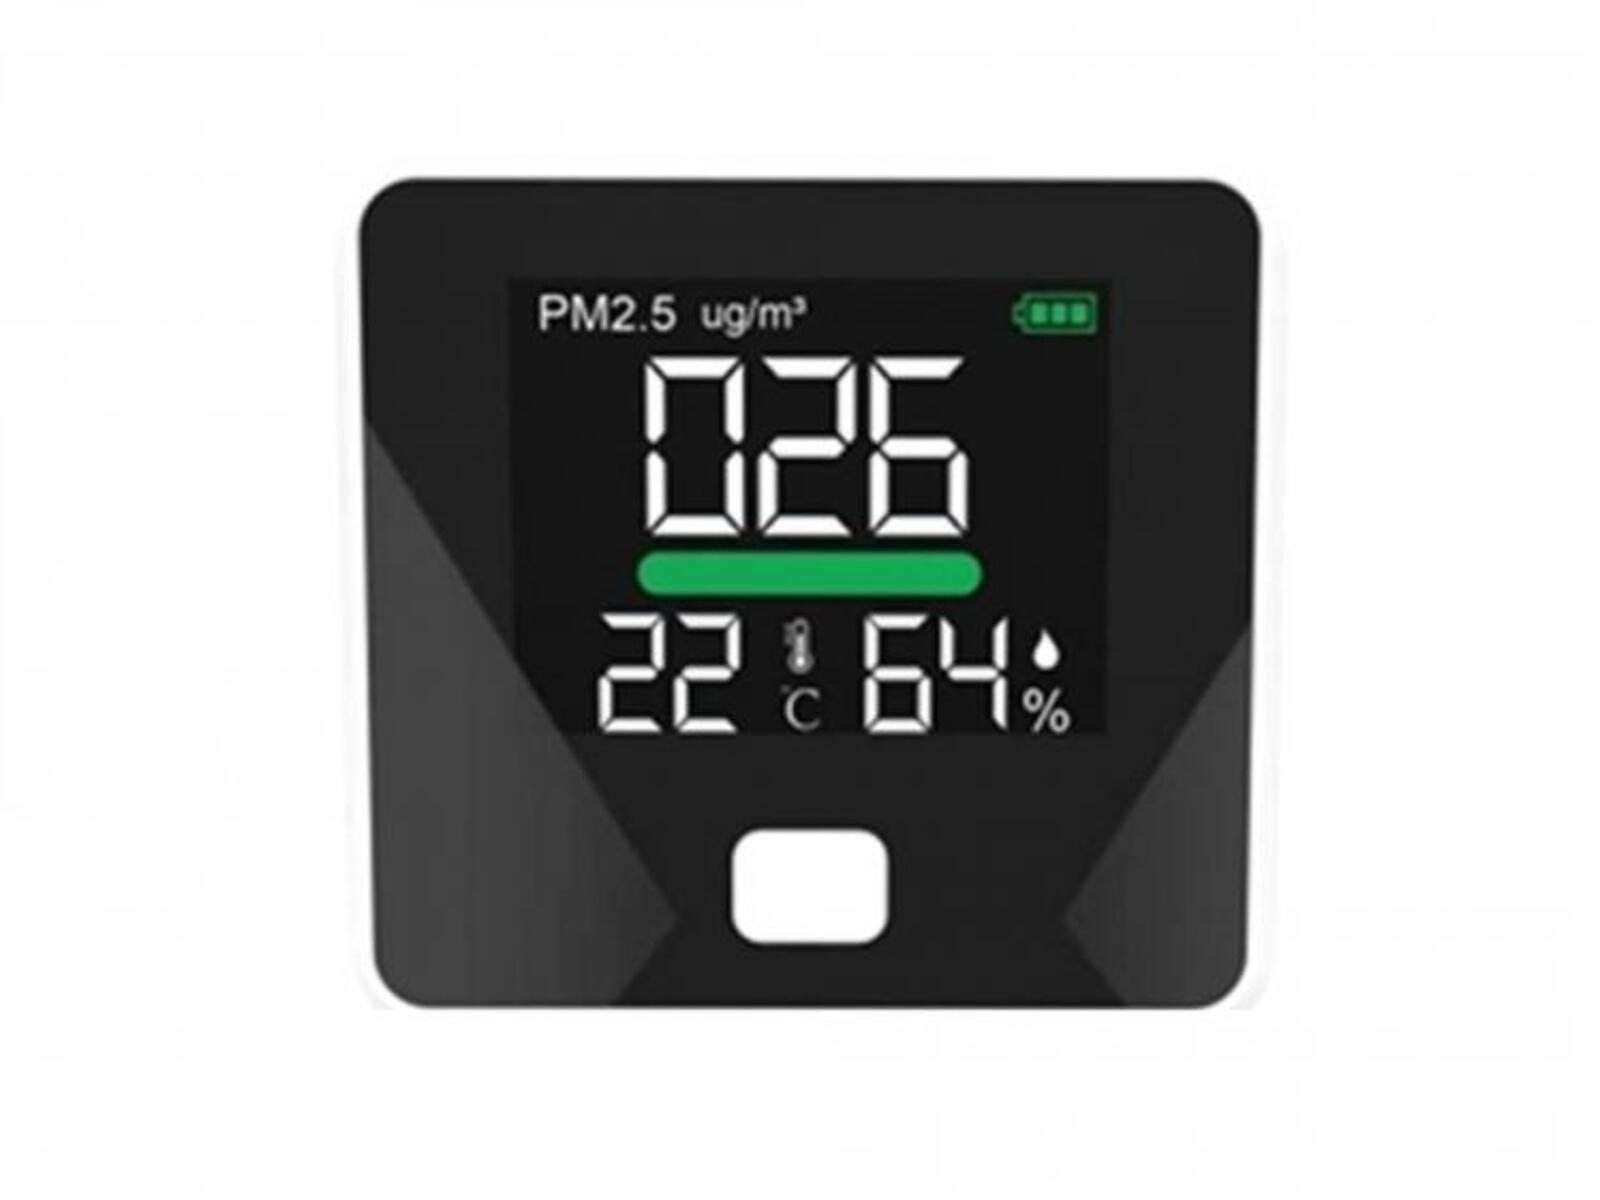 PURLINE Luftqualitätsmessgerät mit PM2.5-Sensor und Wetterstation Funktionen 3